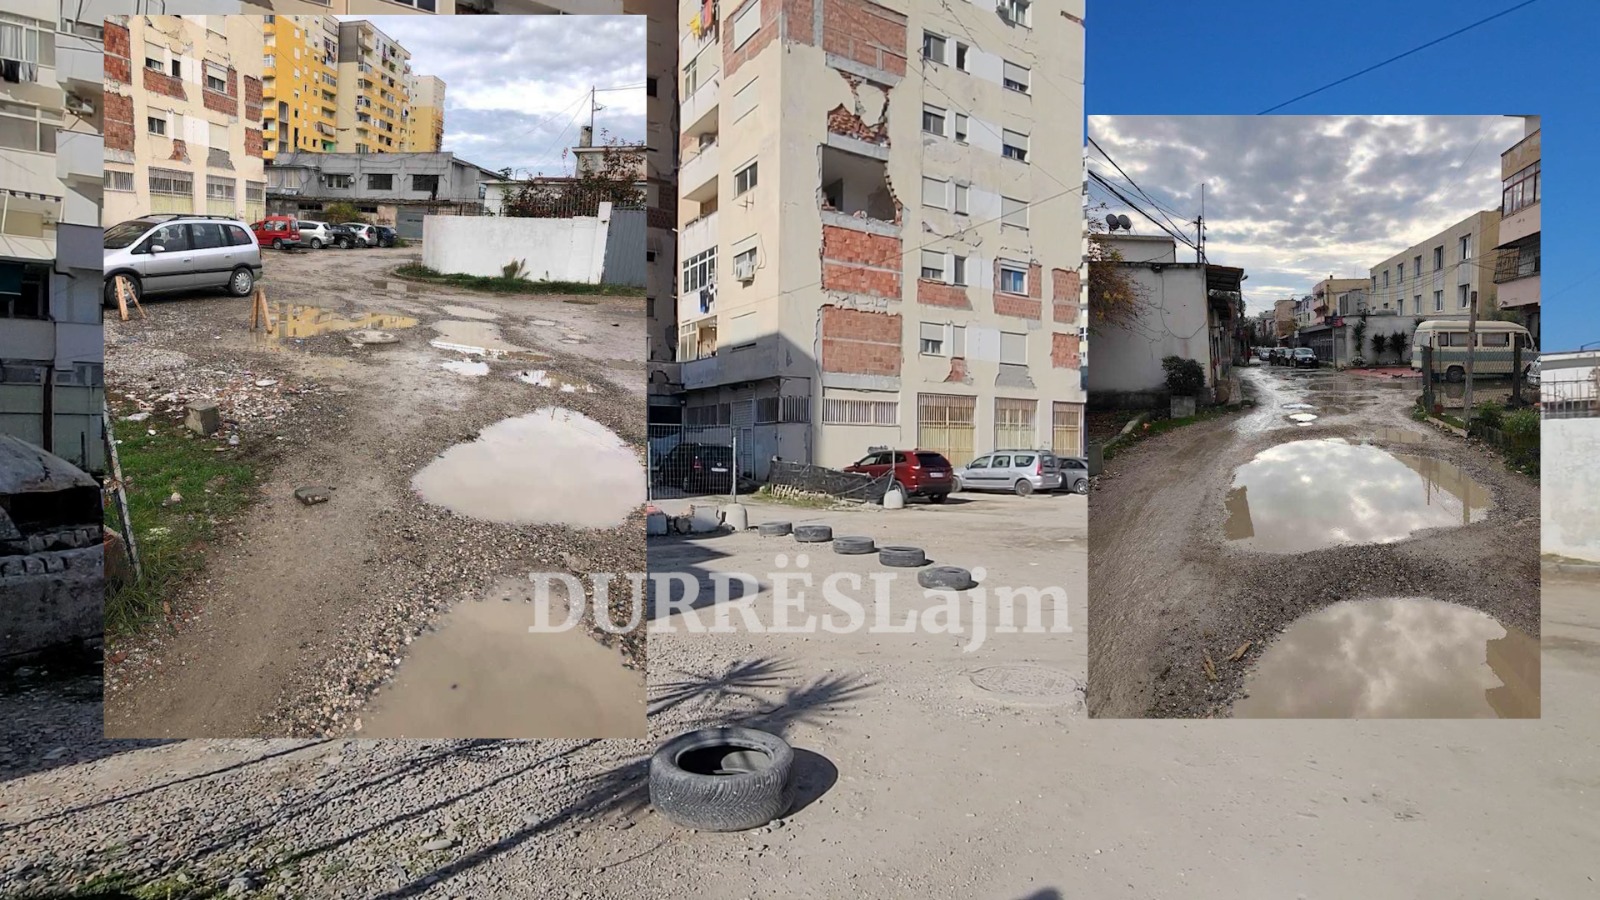 &#8220;Na duhen varka për të kaluar!&#8221; Banorët e kësaj rruge në Durrës prej 2 dekadash presin shtrimin e saj (VIDEO)